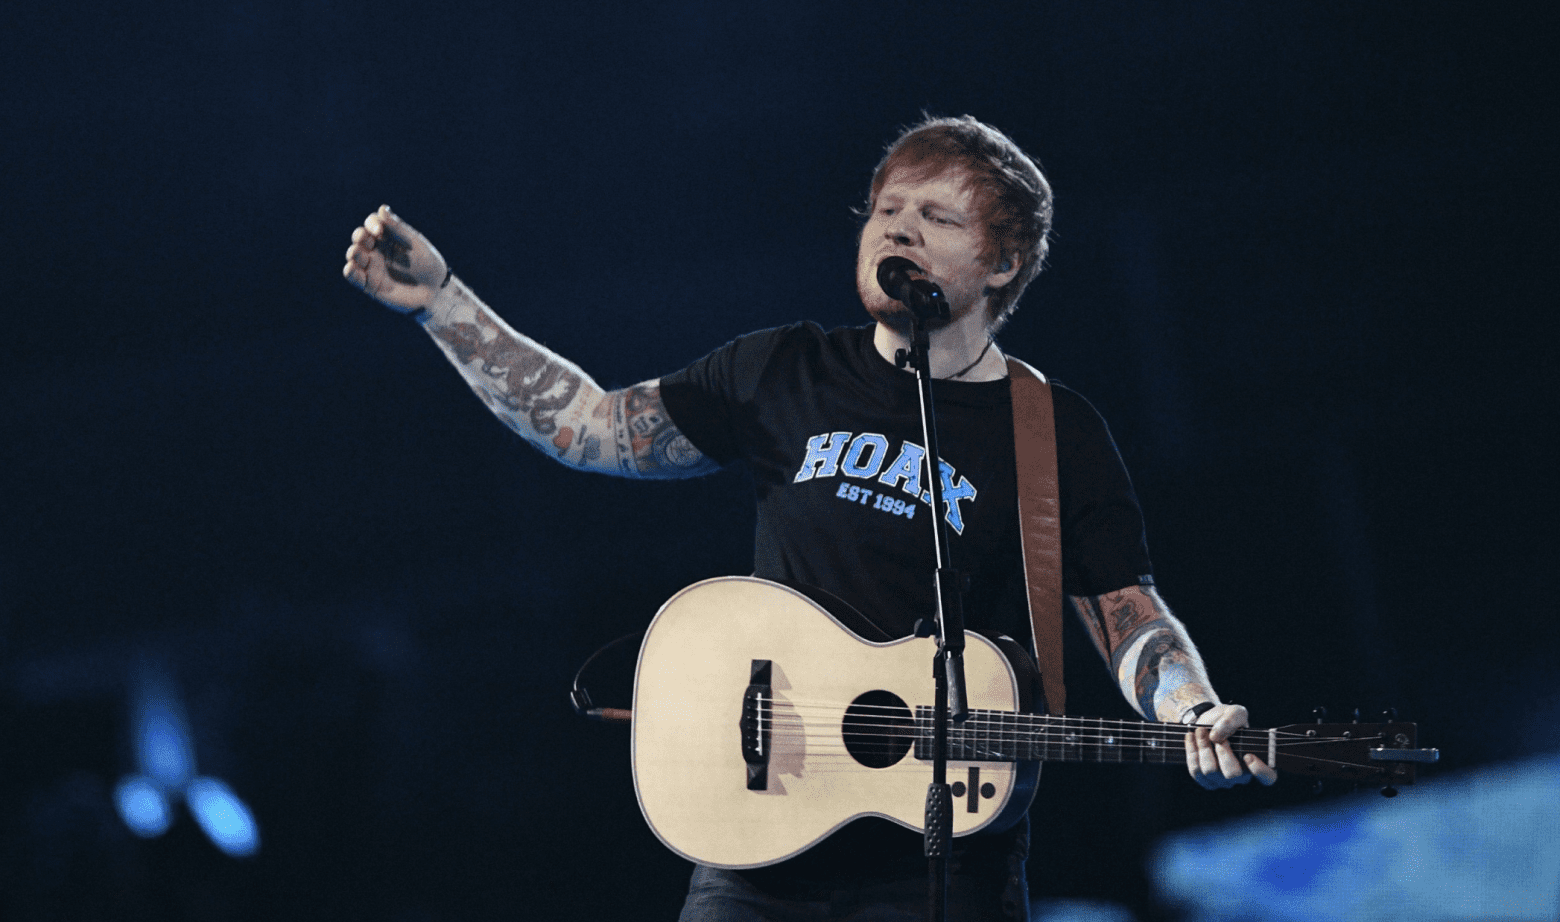 Onderzoek - door muziek van Ed Sheeran eet je meer